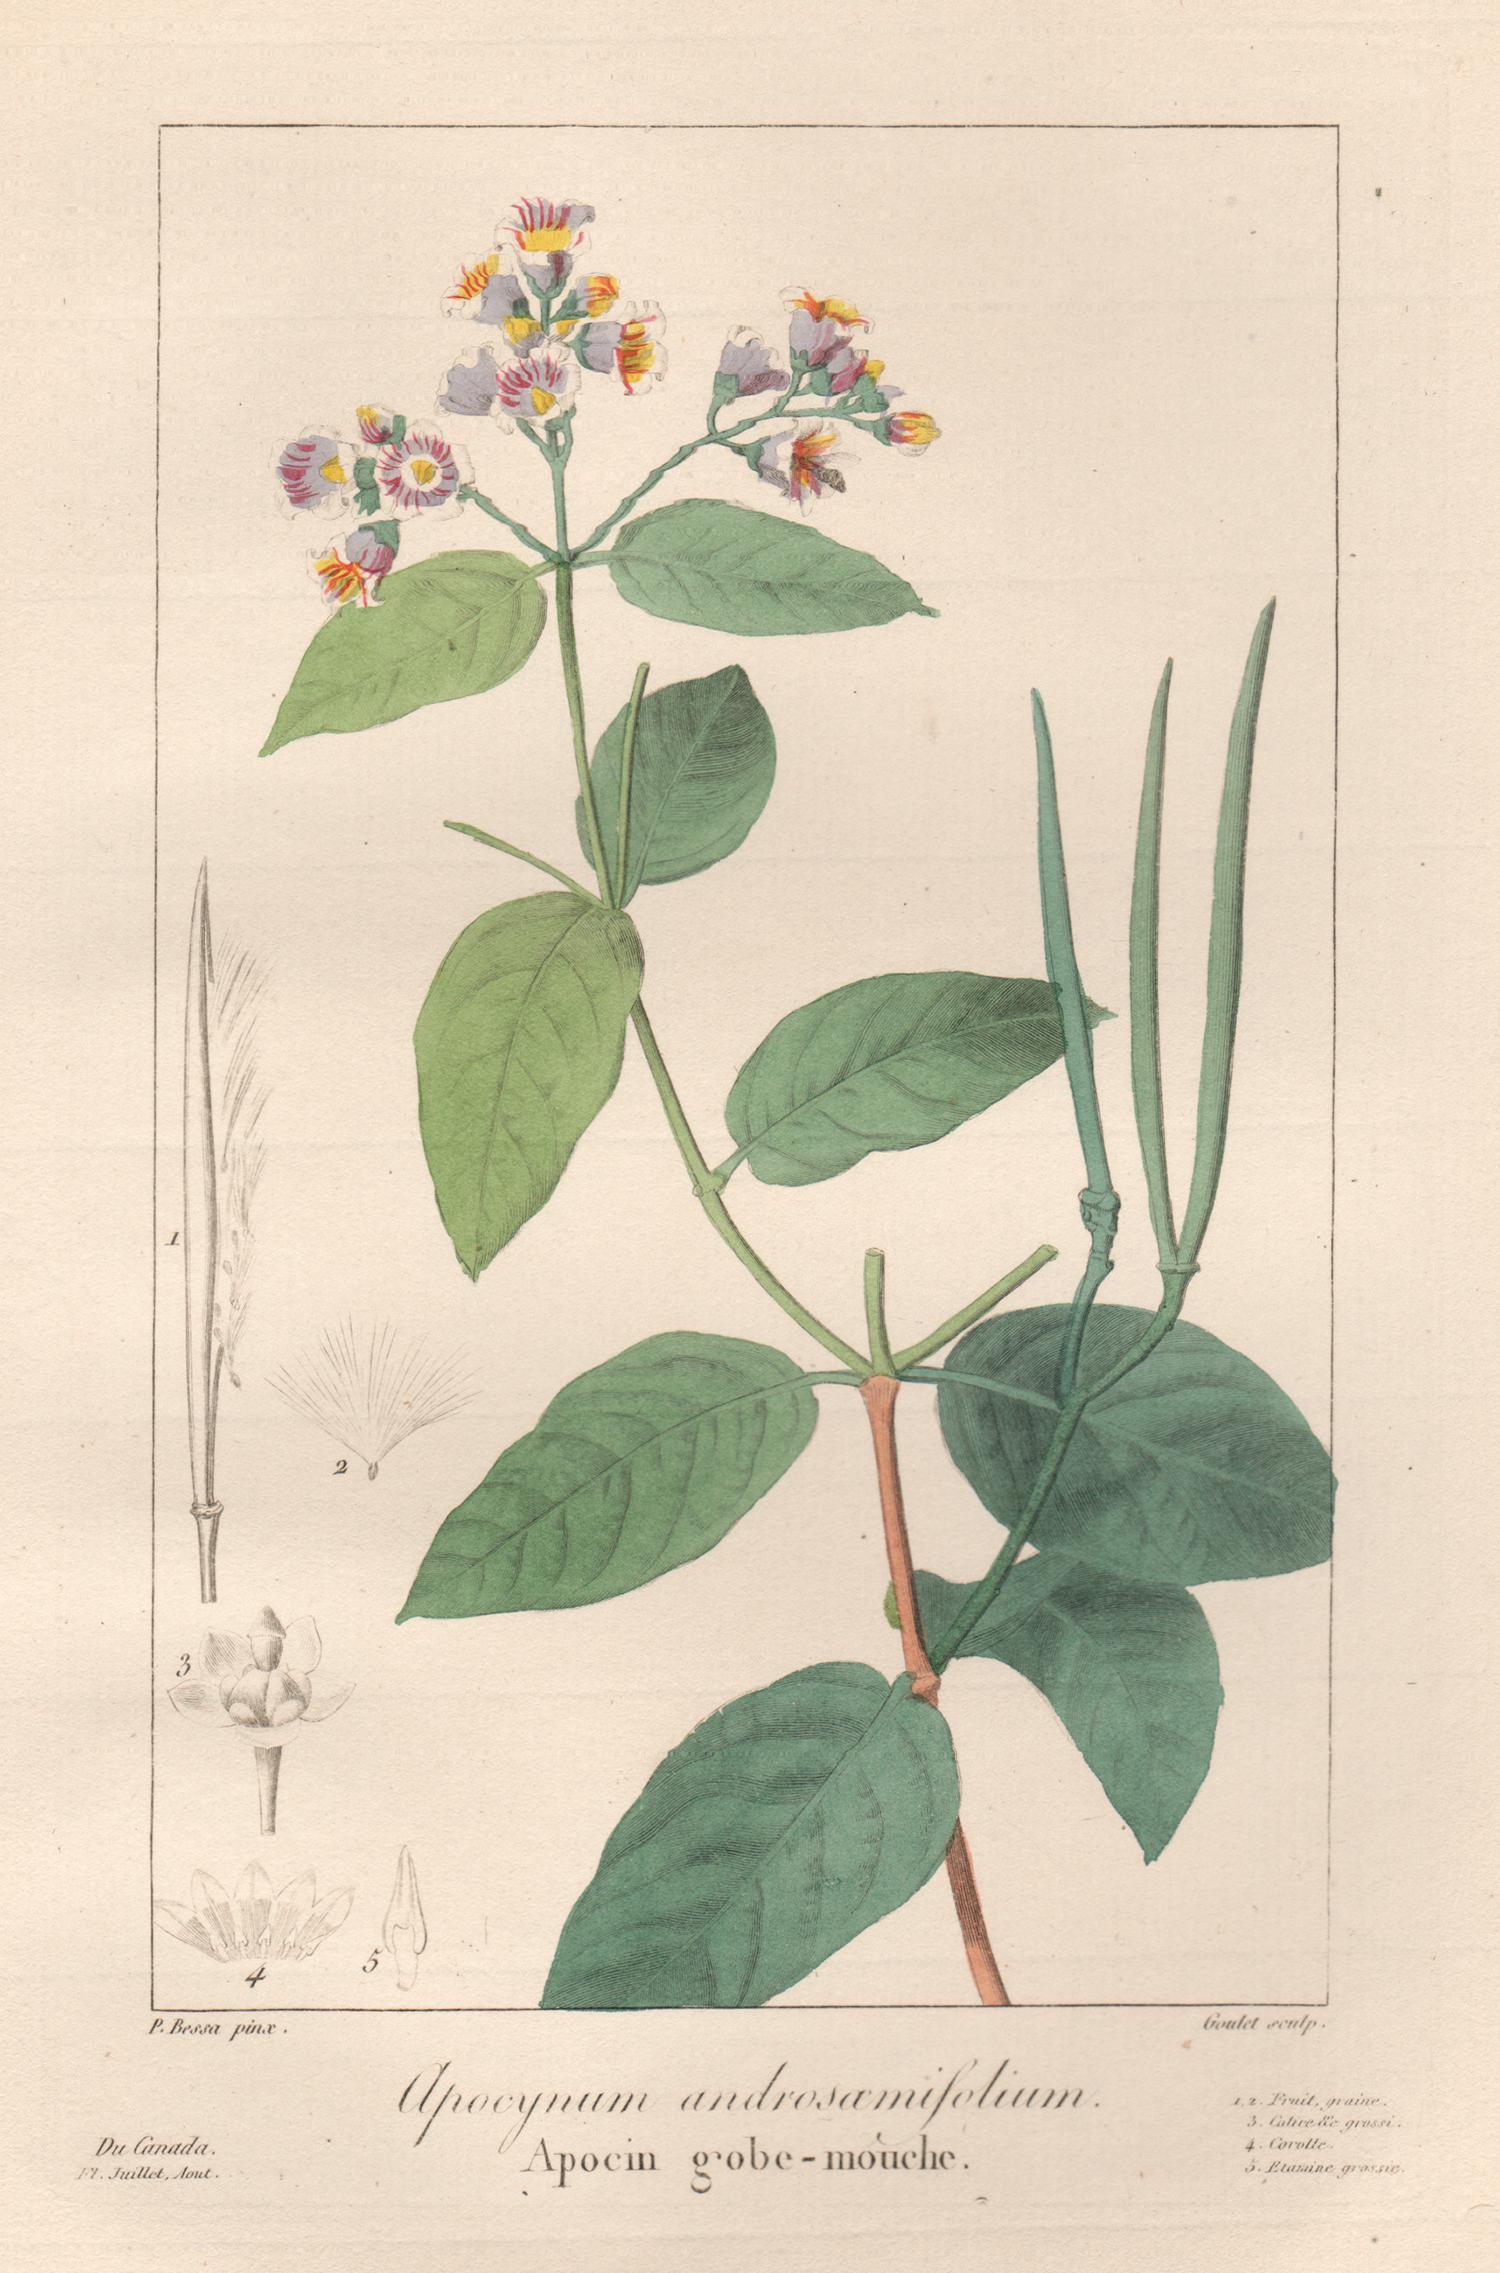 Still-Life Print After Pancrace Bessa - Apocynum androsamifolium - gravure de fleurs botaniques françaises par Bessa, vers 1830